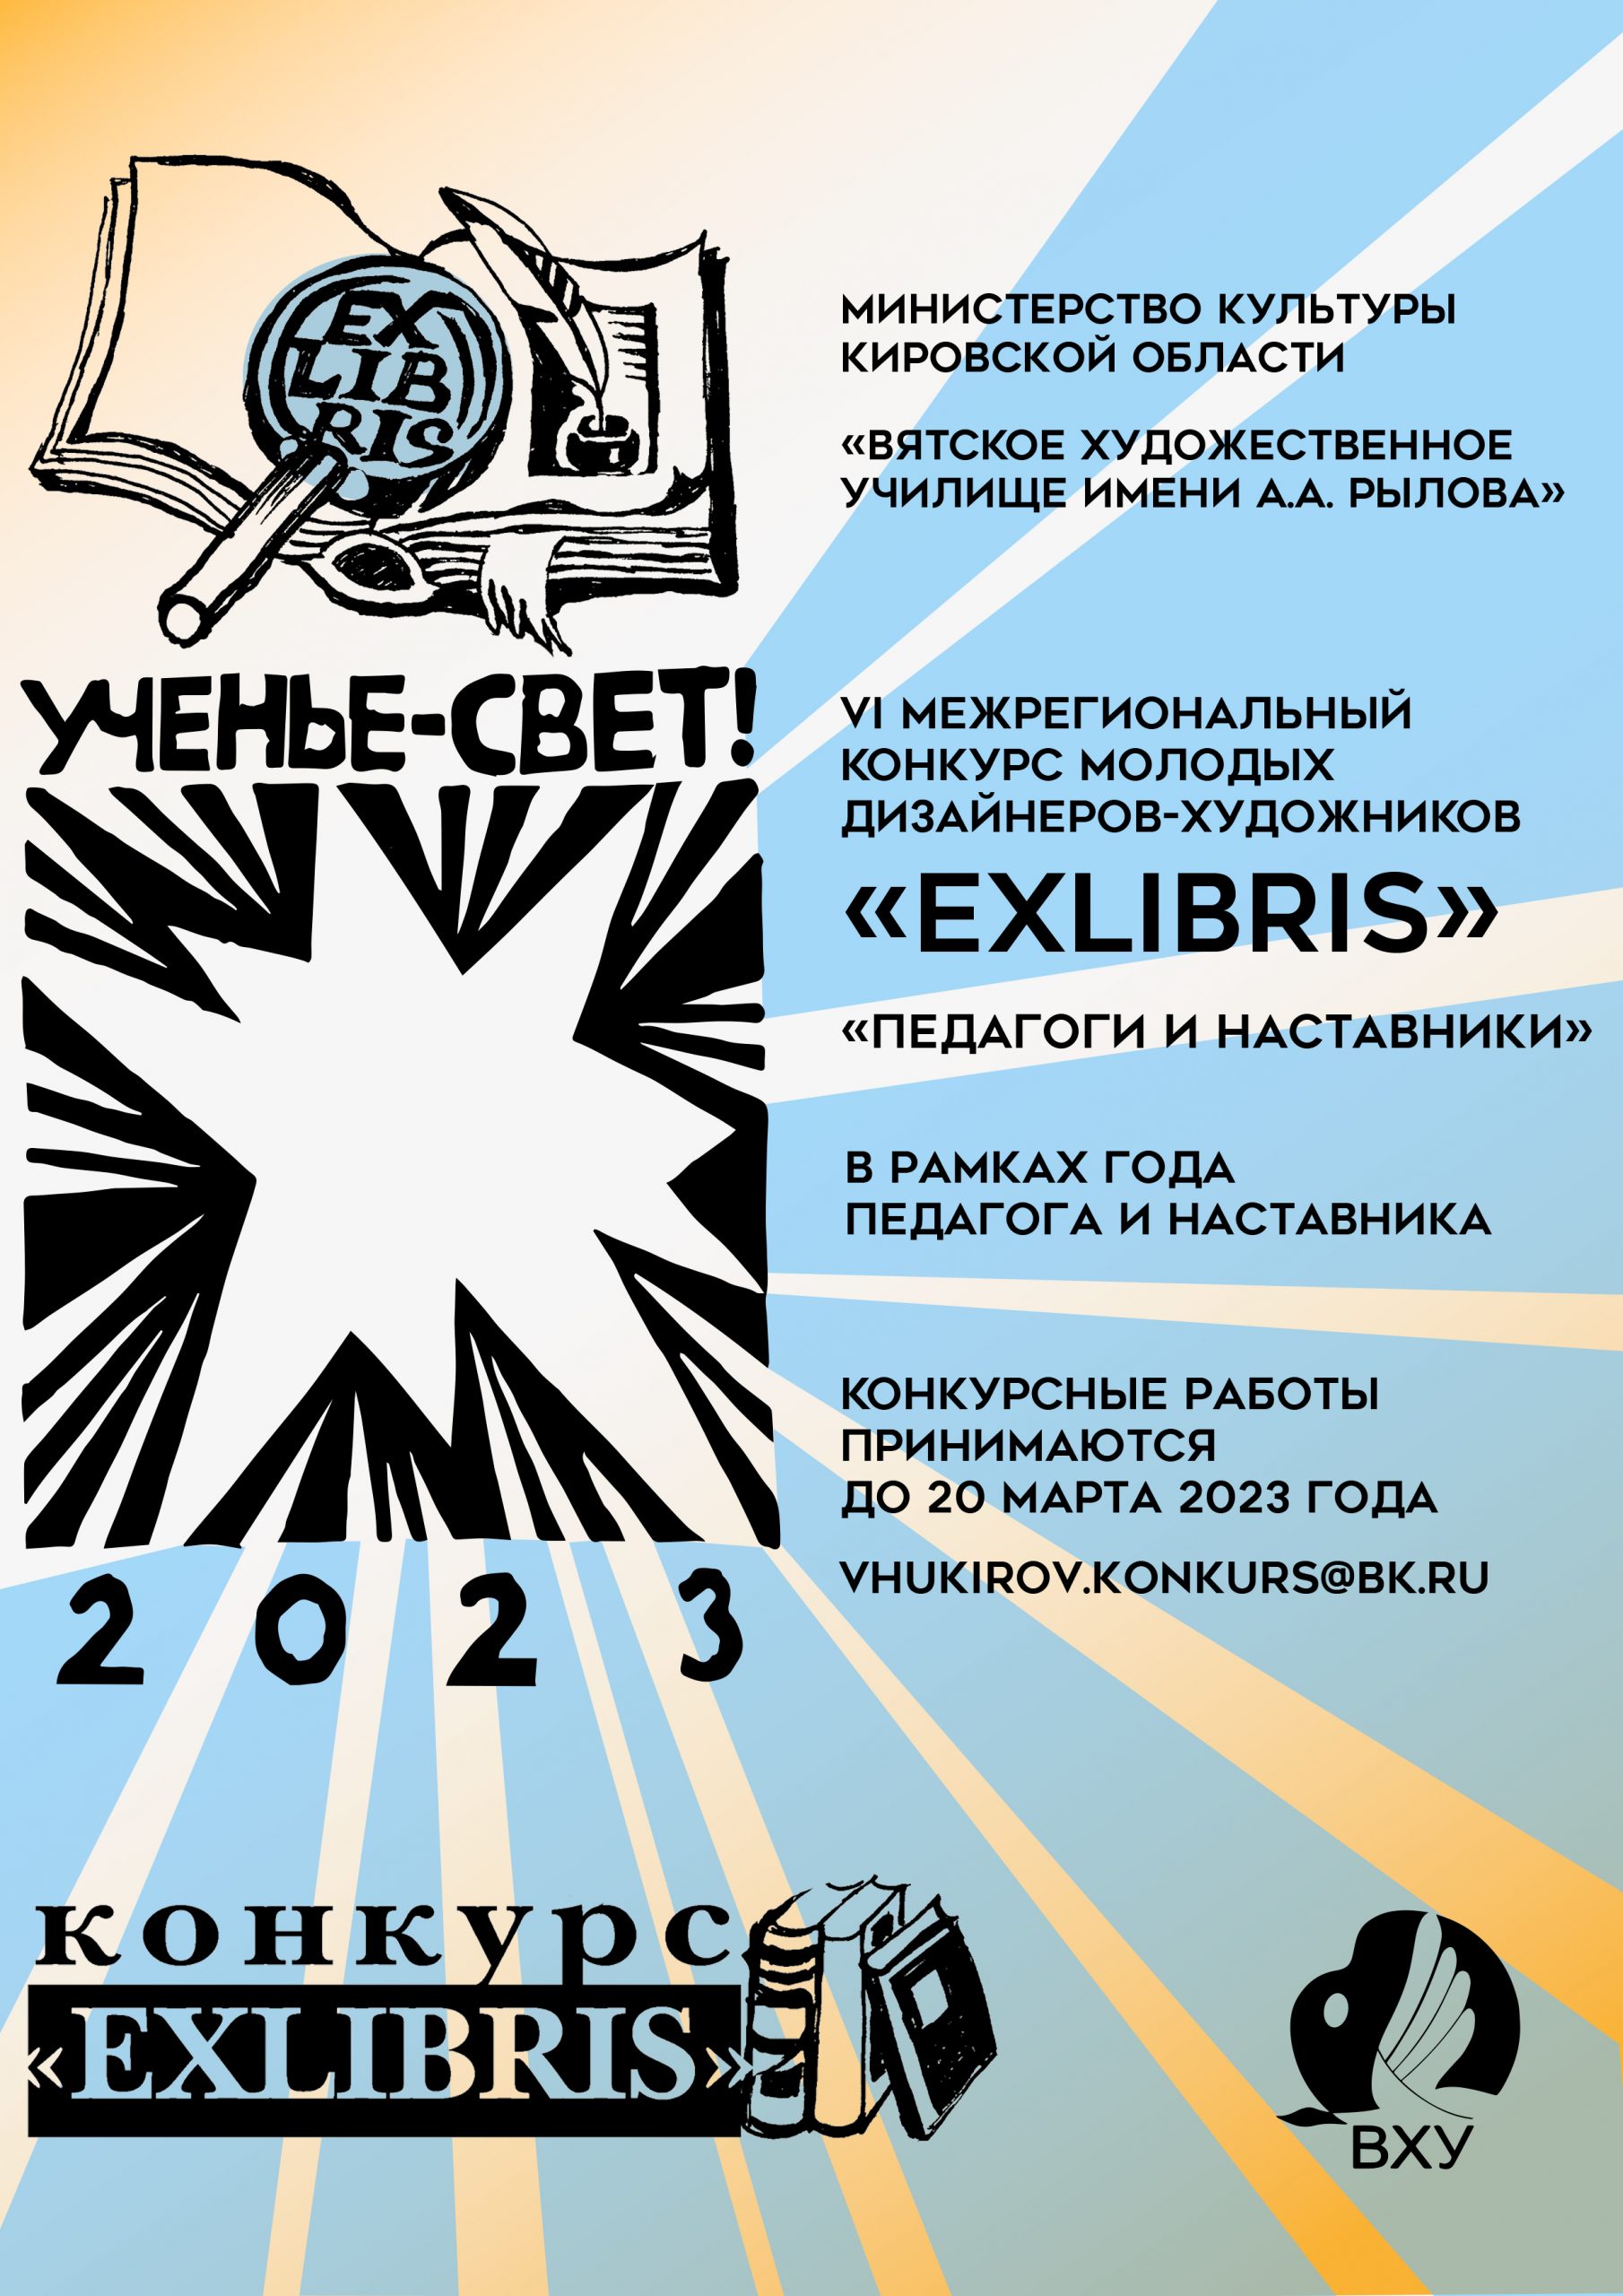 VI межрегиональный конкурс молодых дизайнеров-художников «Exlibris».